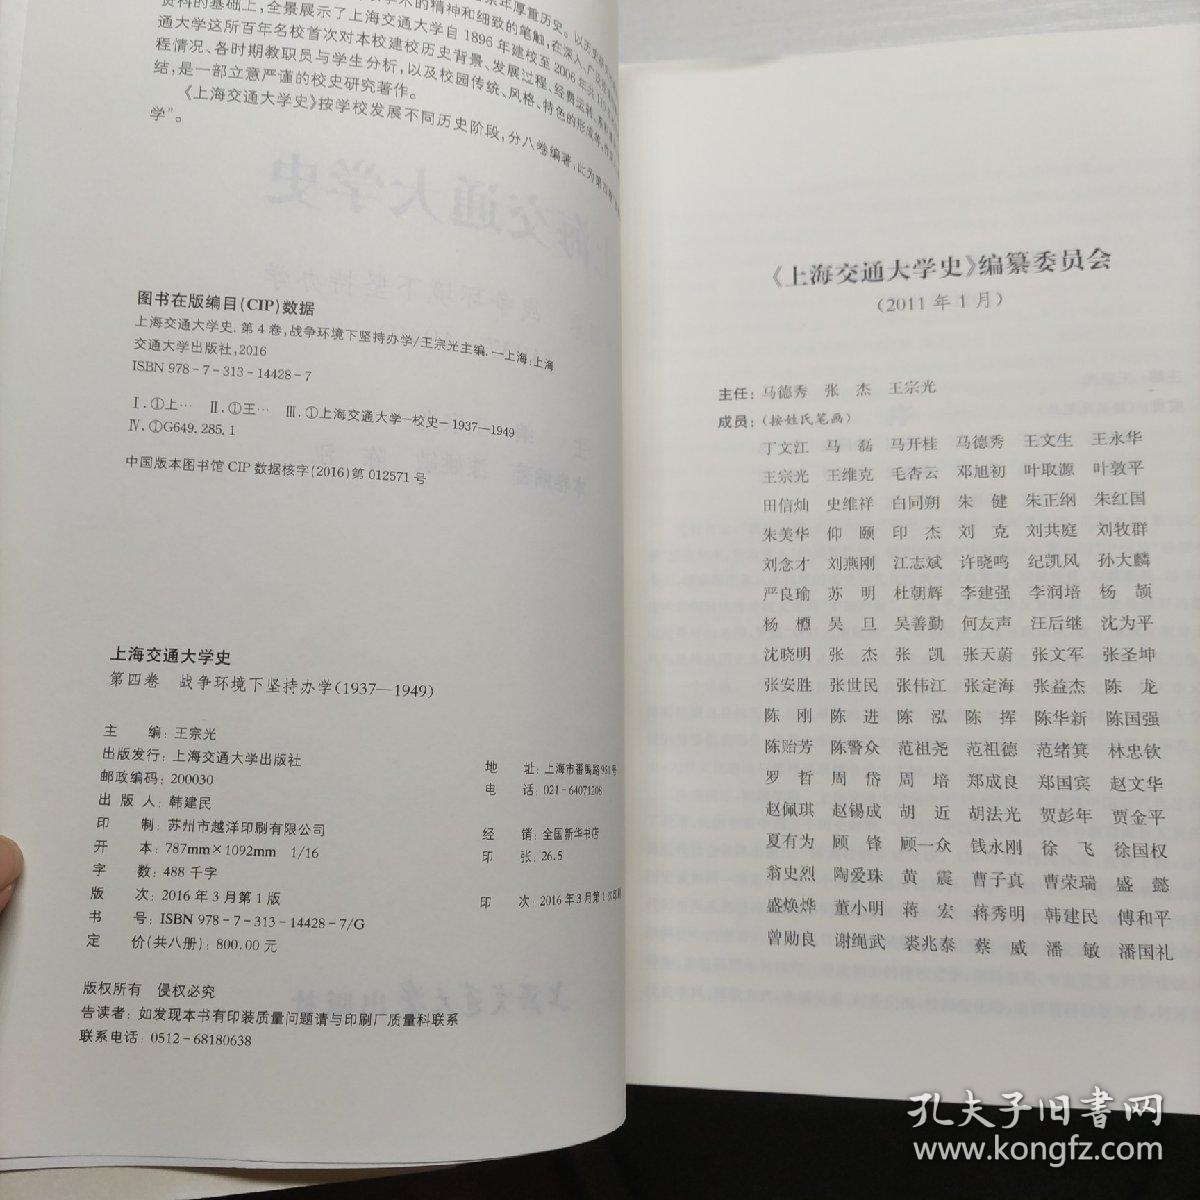 上海交通大学史第四卷